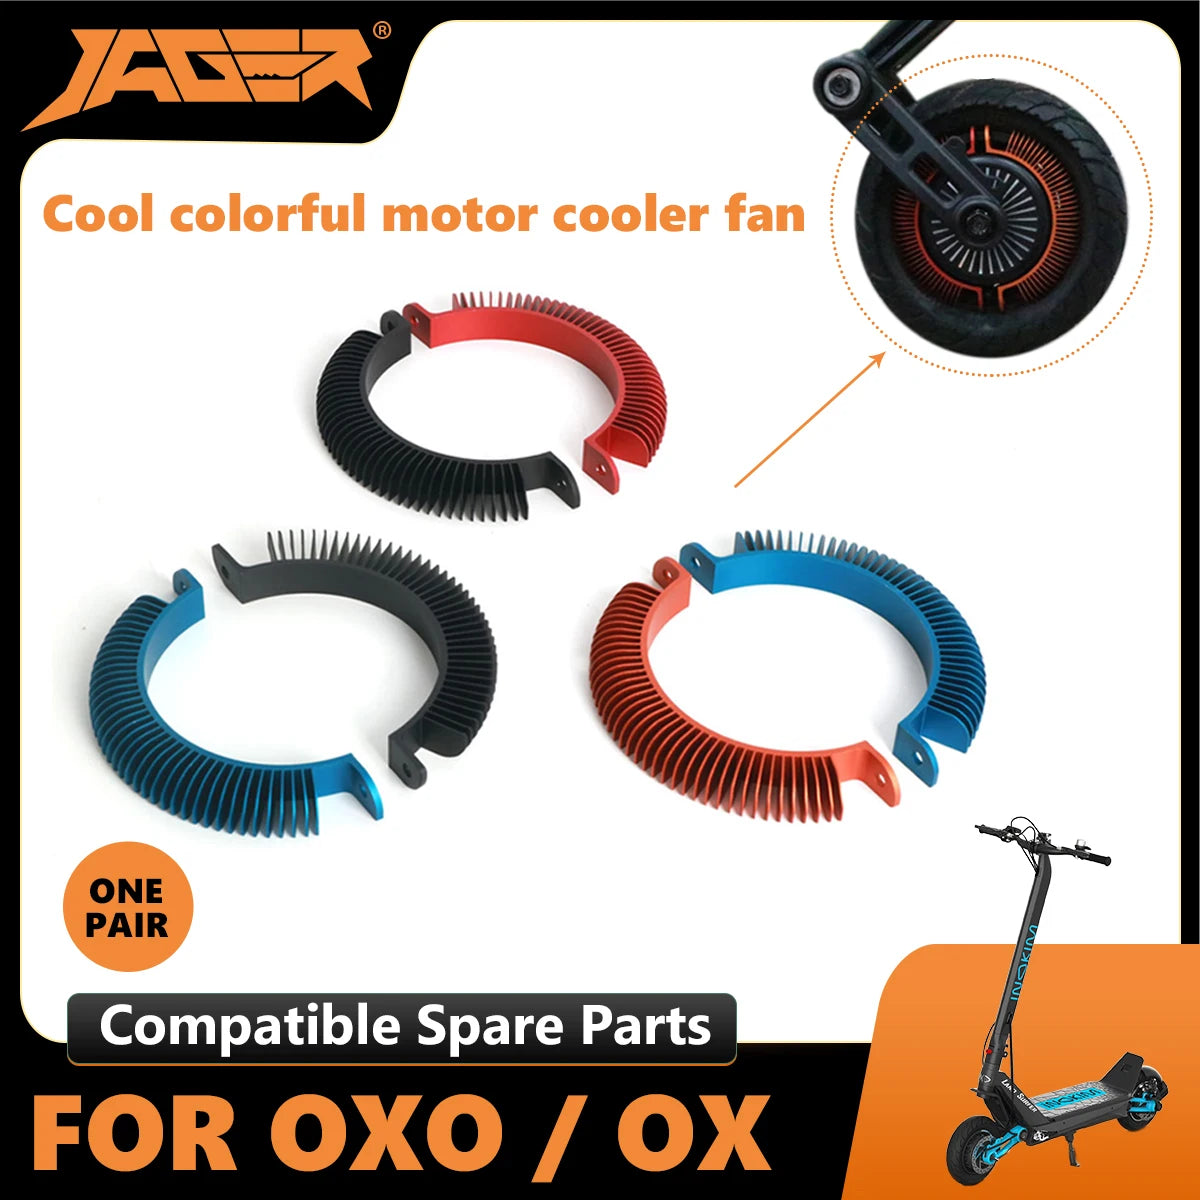 Jager motor cooler fan match Inokim OX motor inokim parts accessories